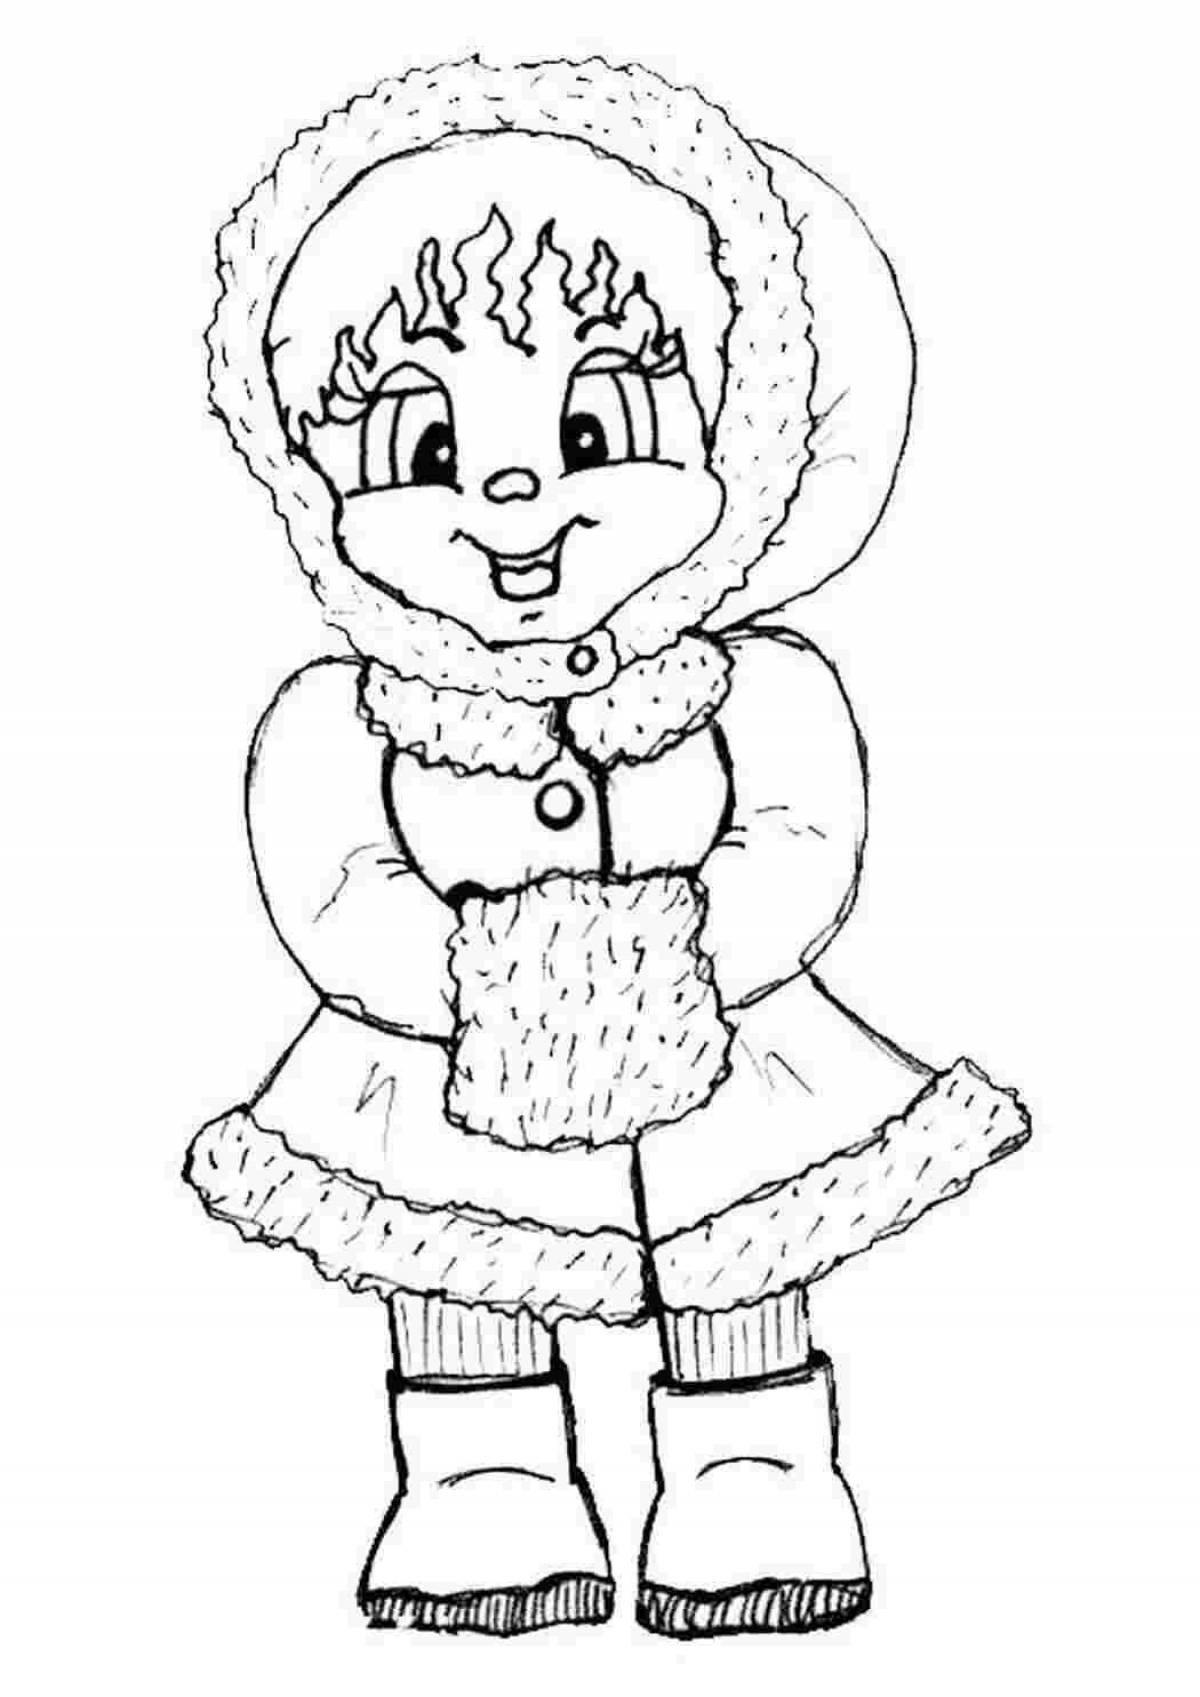 Улыбающаяся девочка-раскраска в зимней одежде